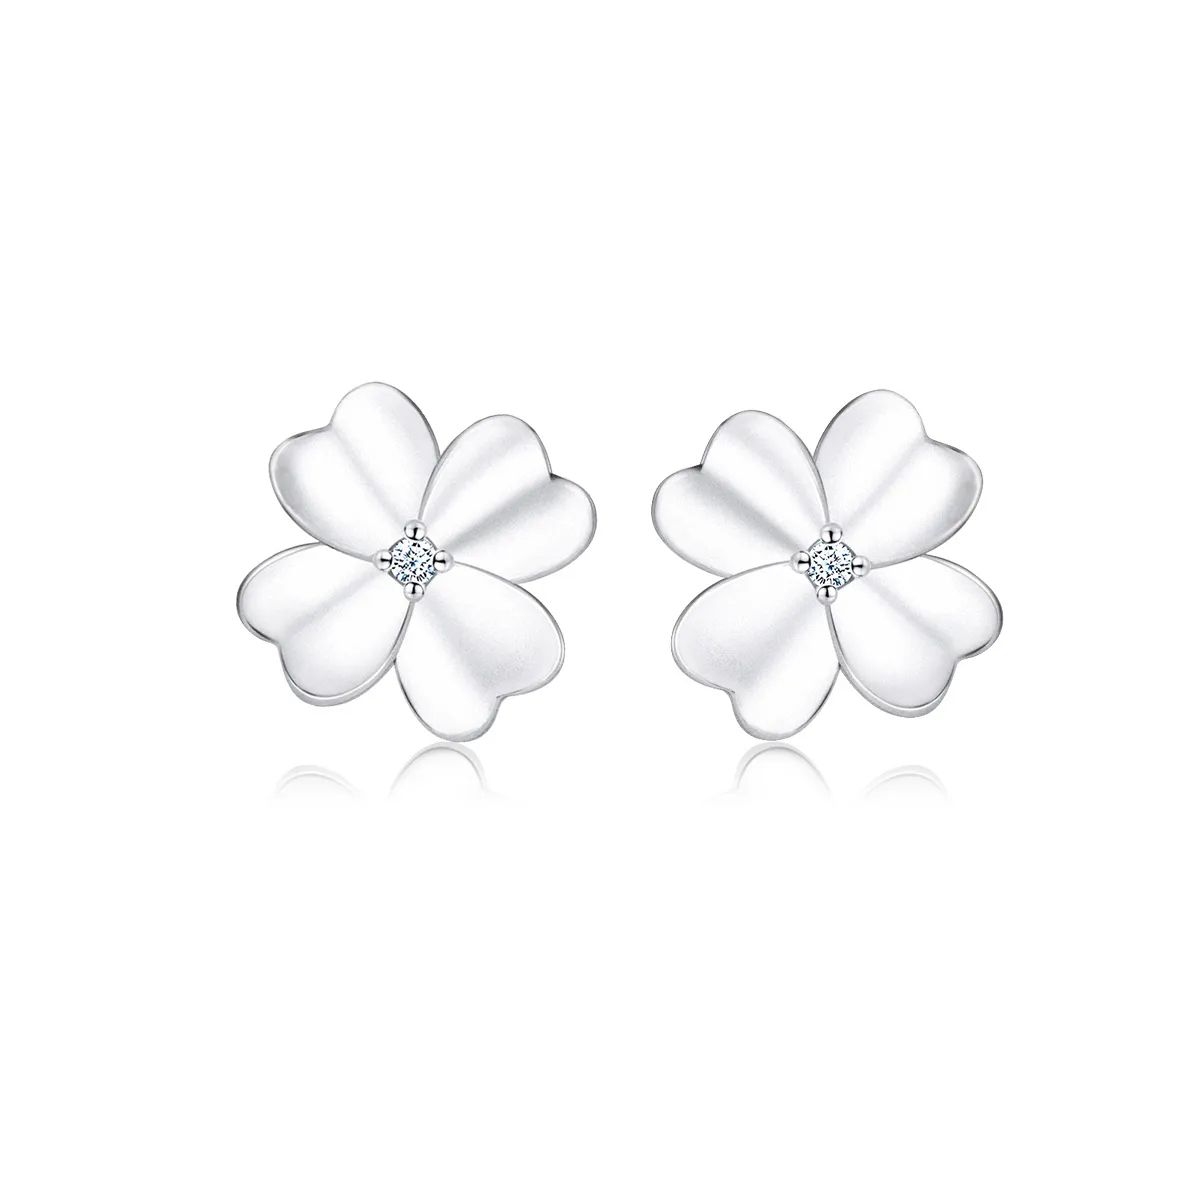 Pandora Style Silver Silver Flower Stud Earrings - SCE864